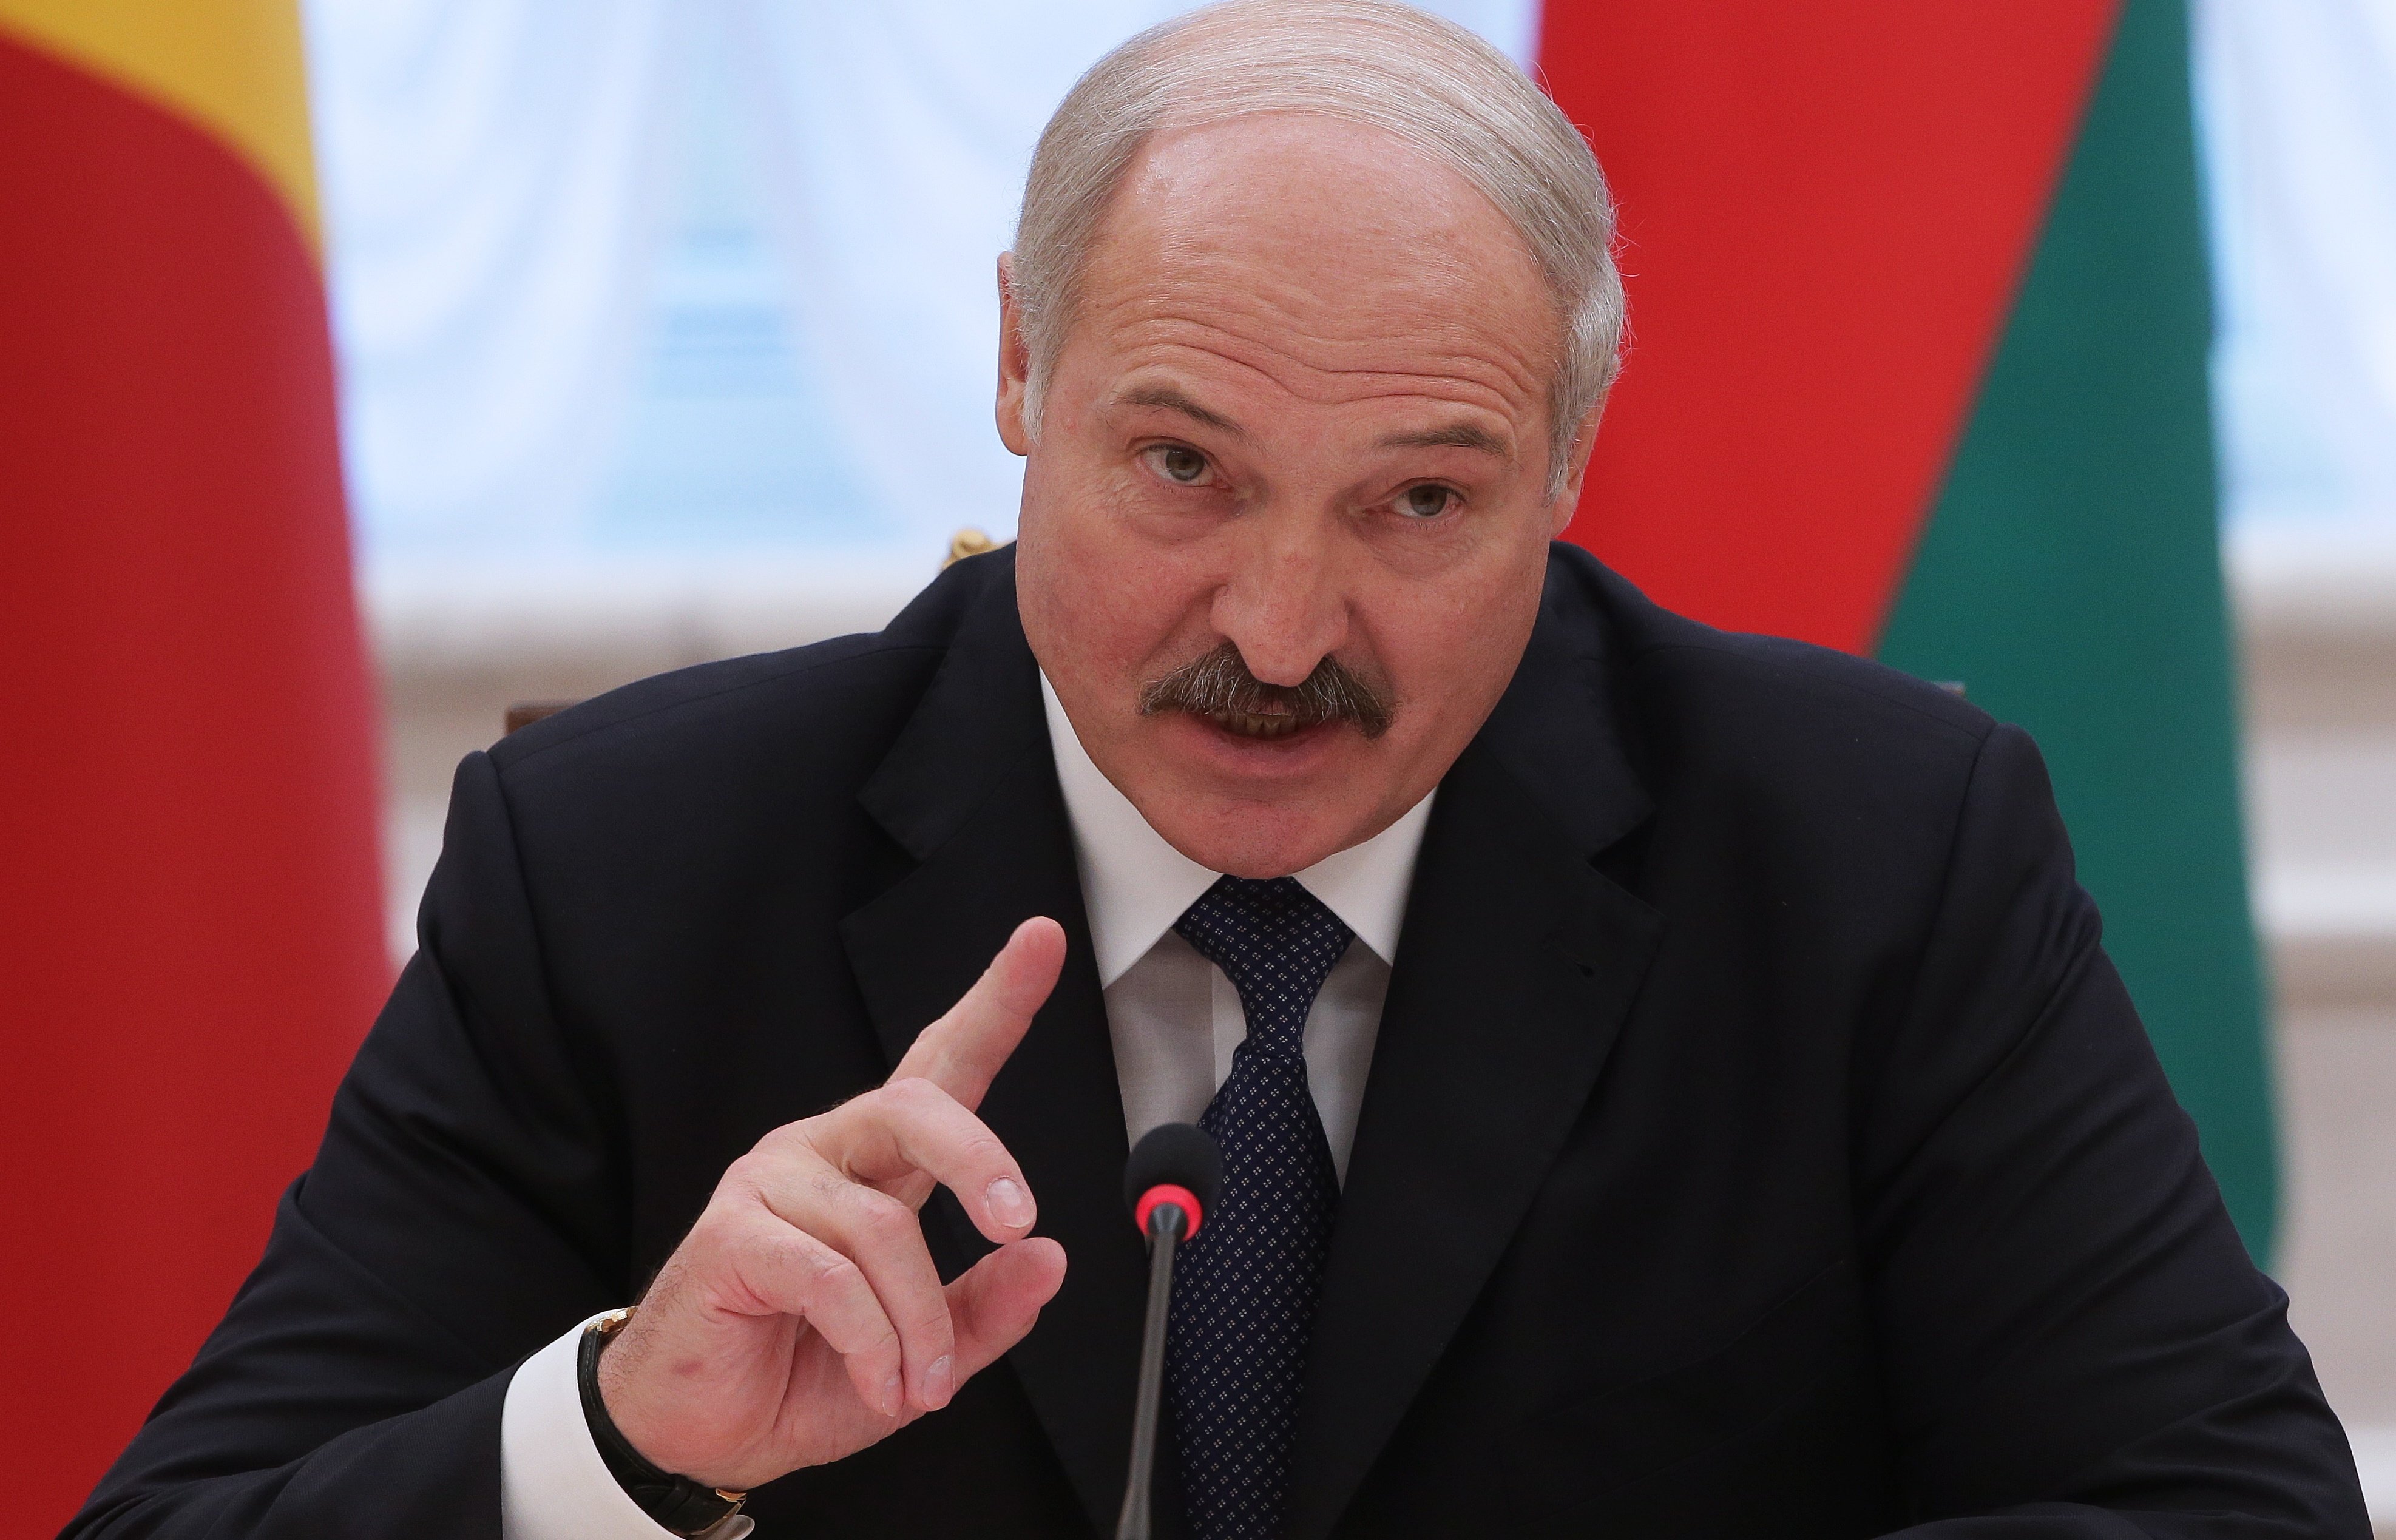 От «фронды» до предательства: что стоит за высказываниями Лукашенко о «не наших войнах» 